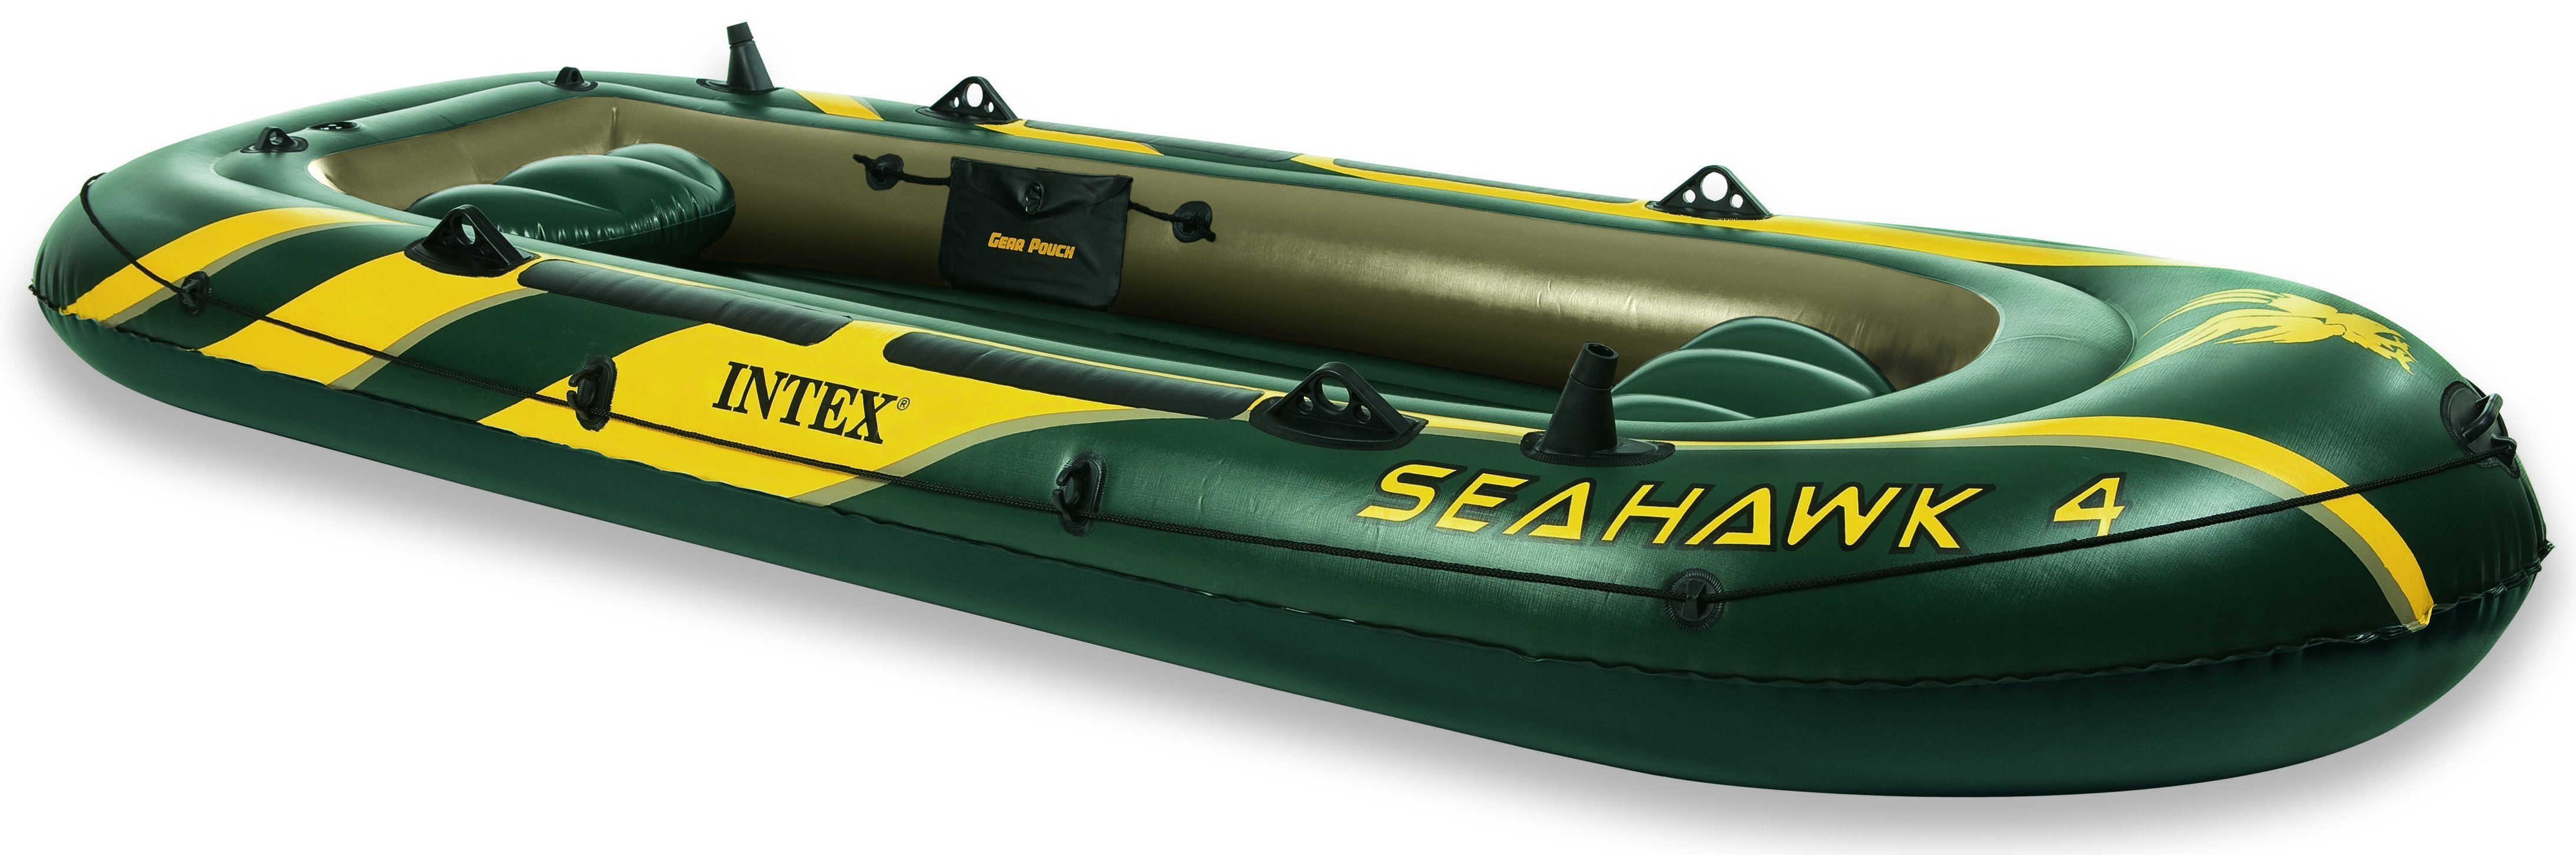 Intex Seahawk 4 - Opblaasboot inclusief Peddels en pomp